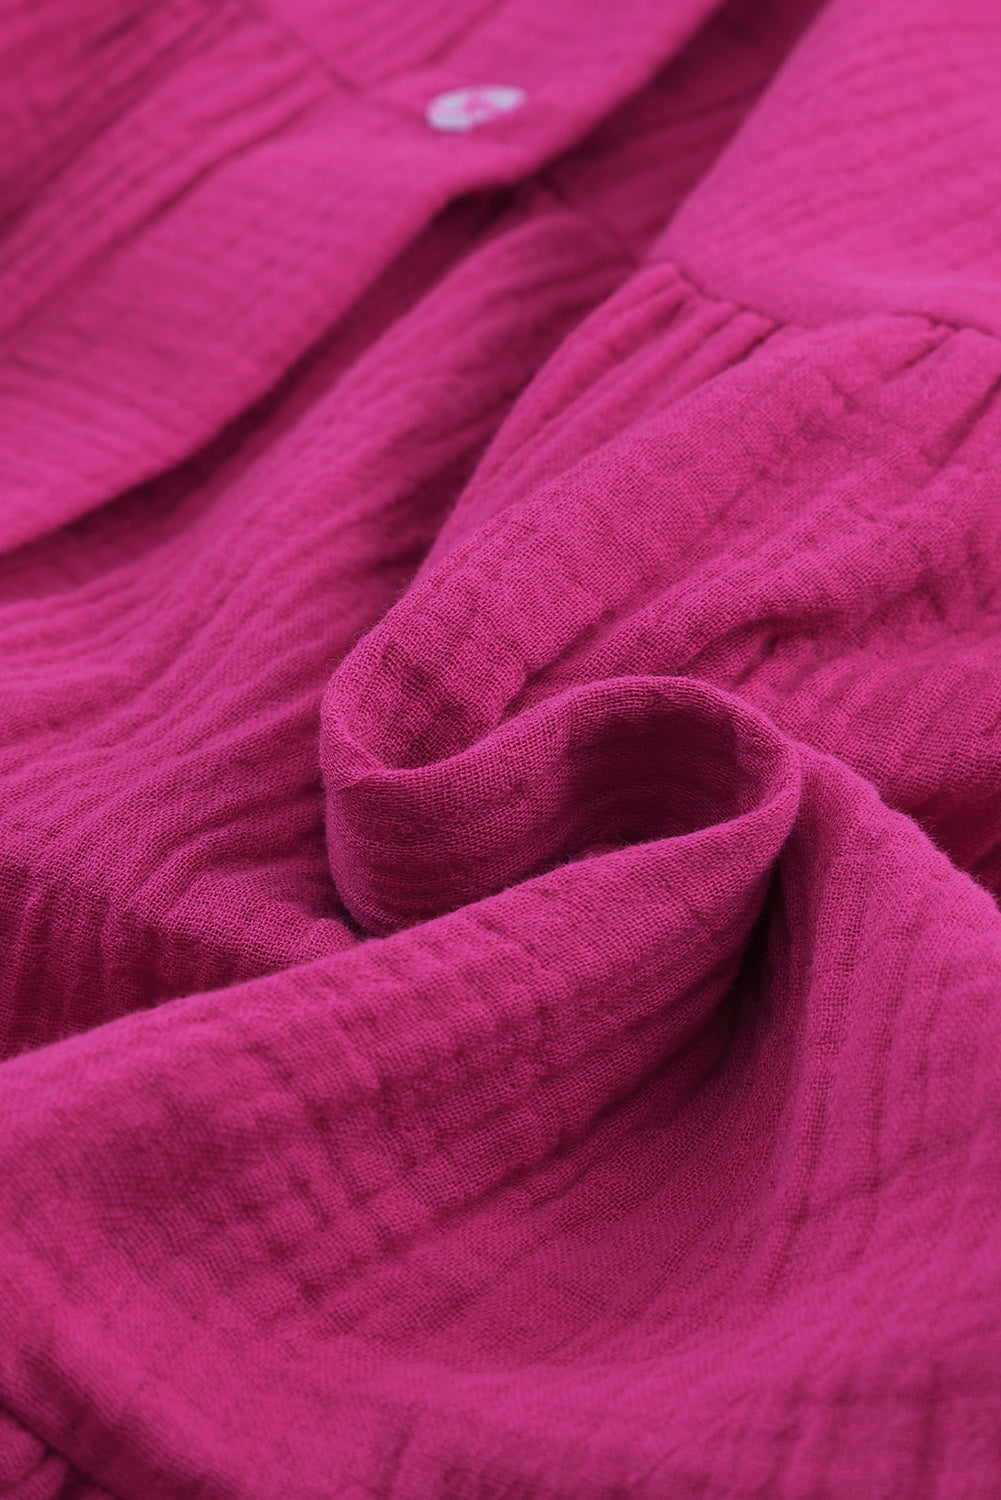 Gestuftes Hemdblusenkleid mit geteiltem Ausschnitt in Rosa in Knitteroptik